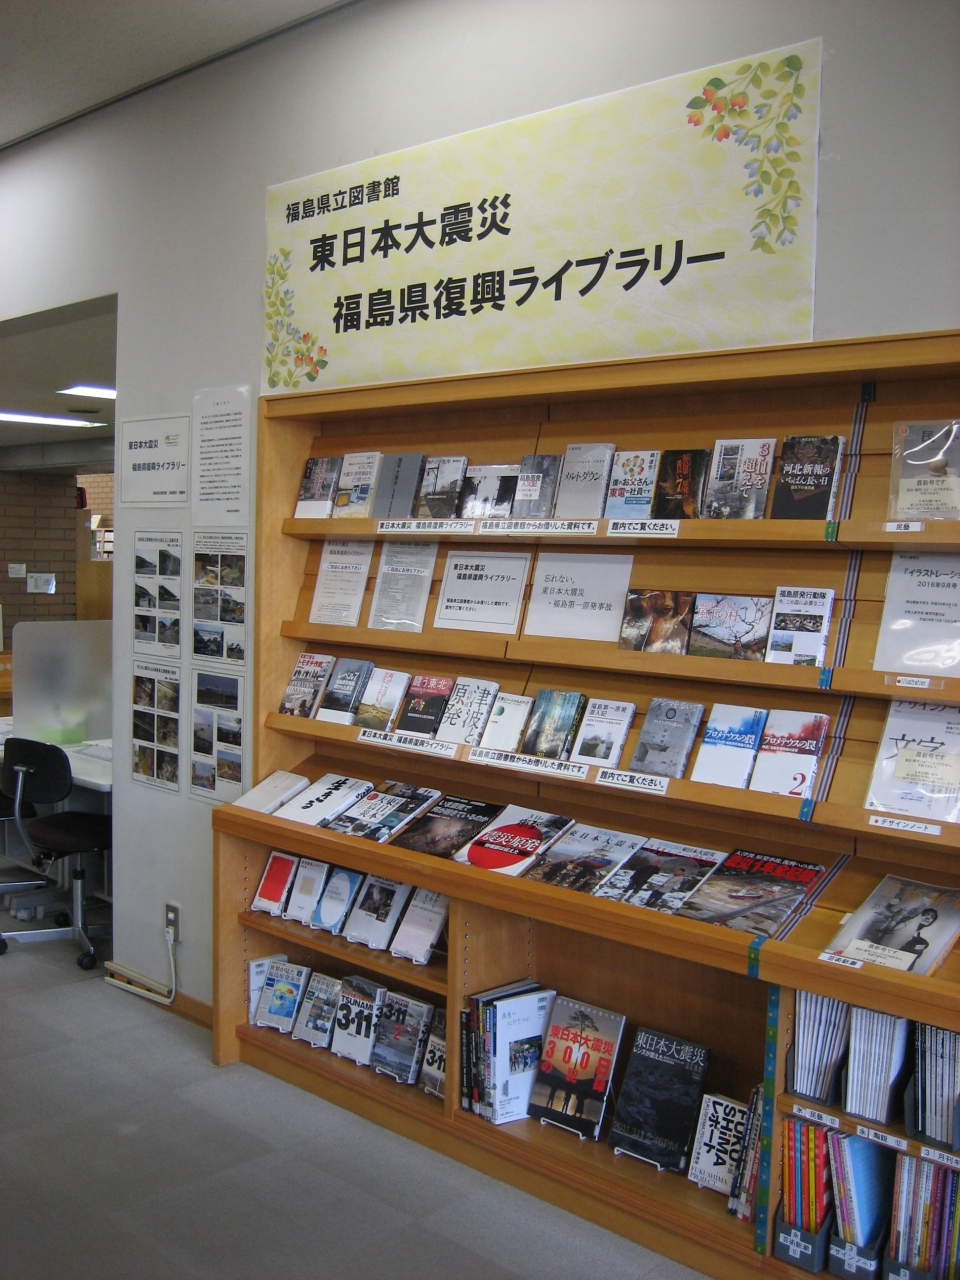 新潟県長岡市立中央図書館 出張展示の様子